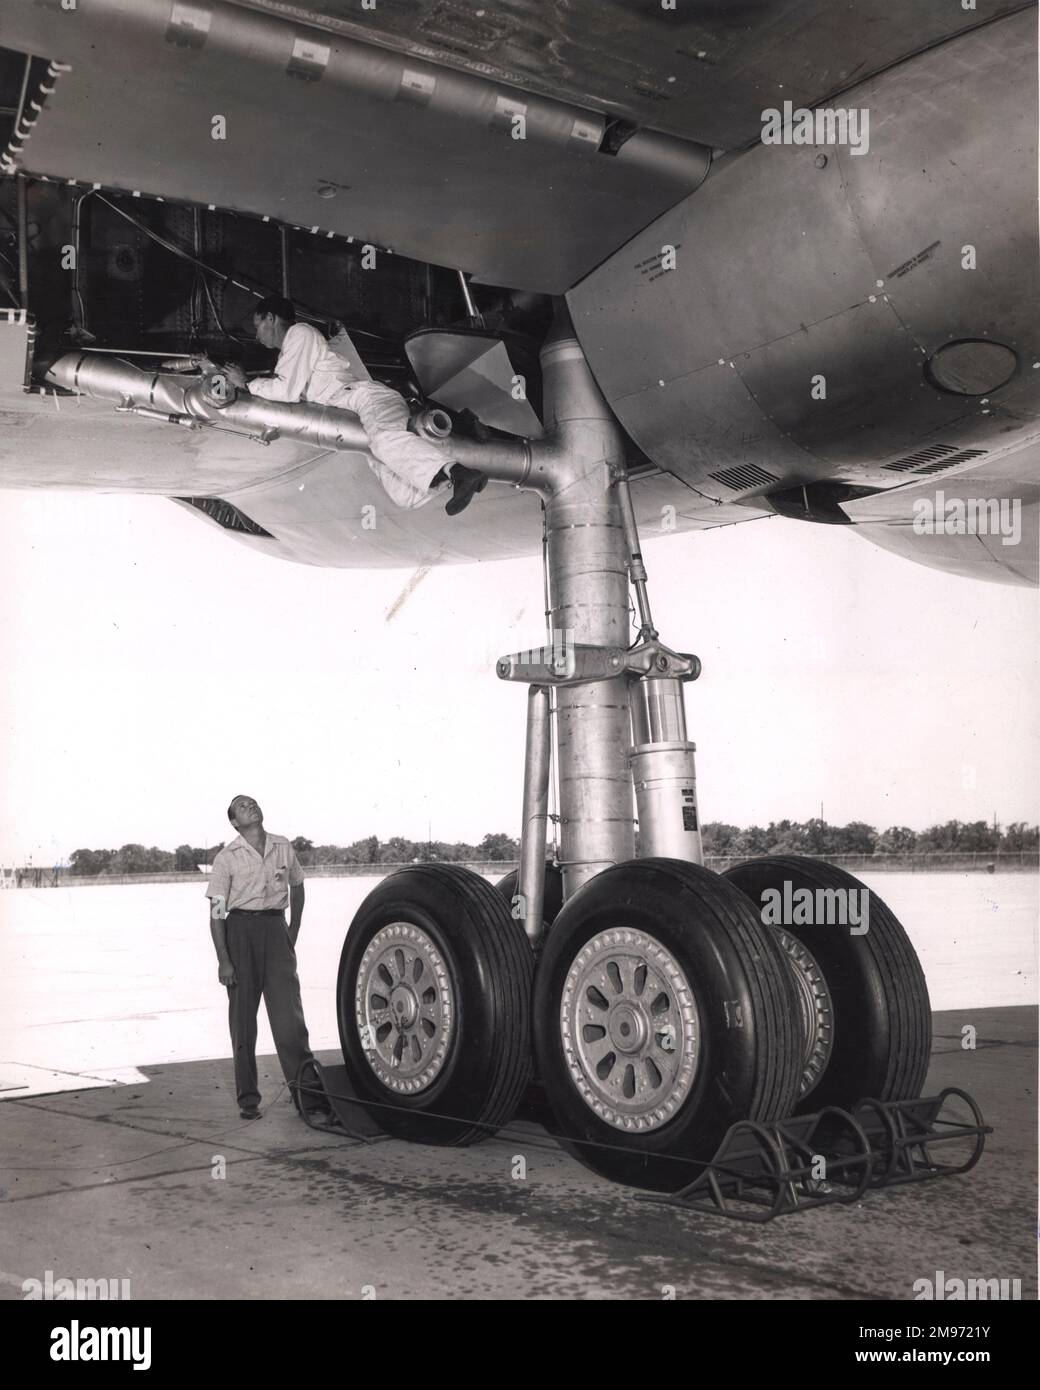 Das vierrädrige Hauptfahrwerk eines Convair B-36. Jedes Hauptrad hat einen Durchmesser von 56in mm. Stockfoto